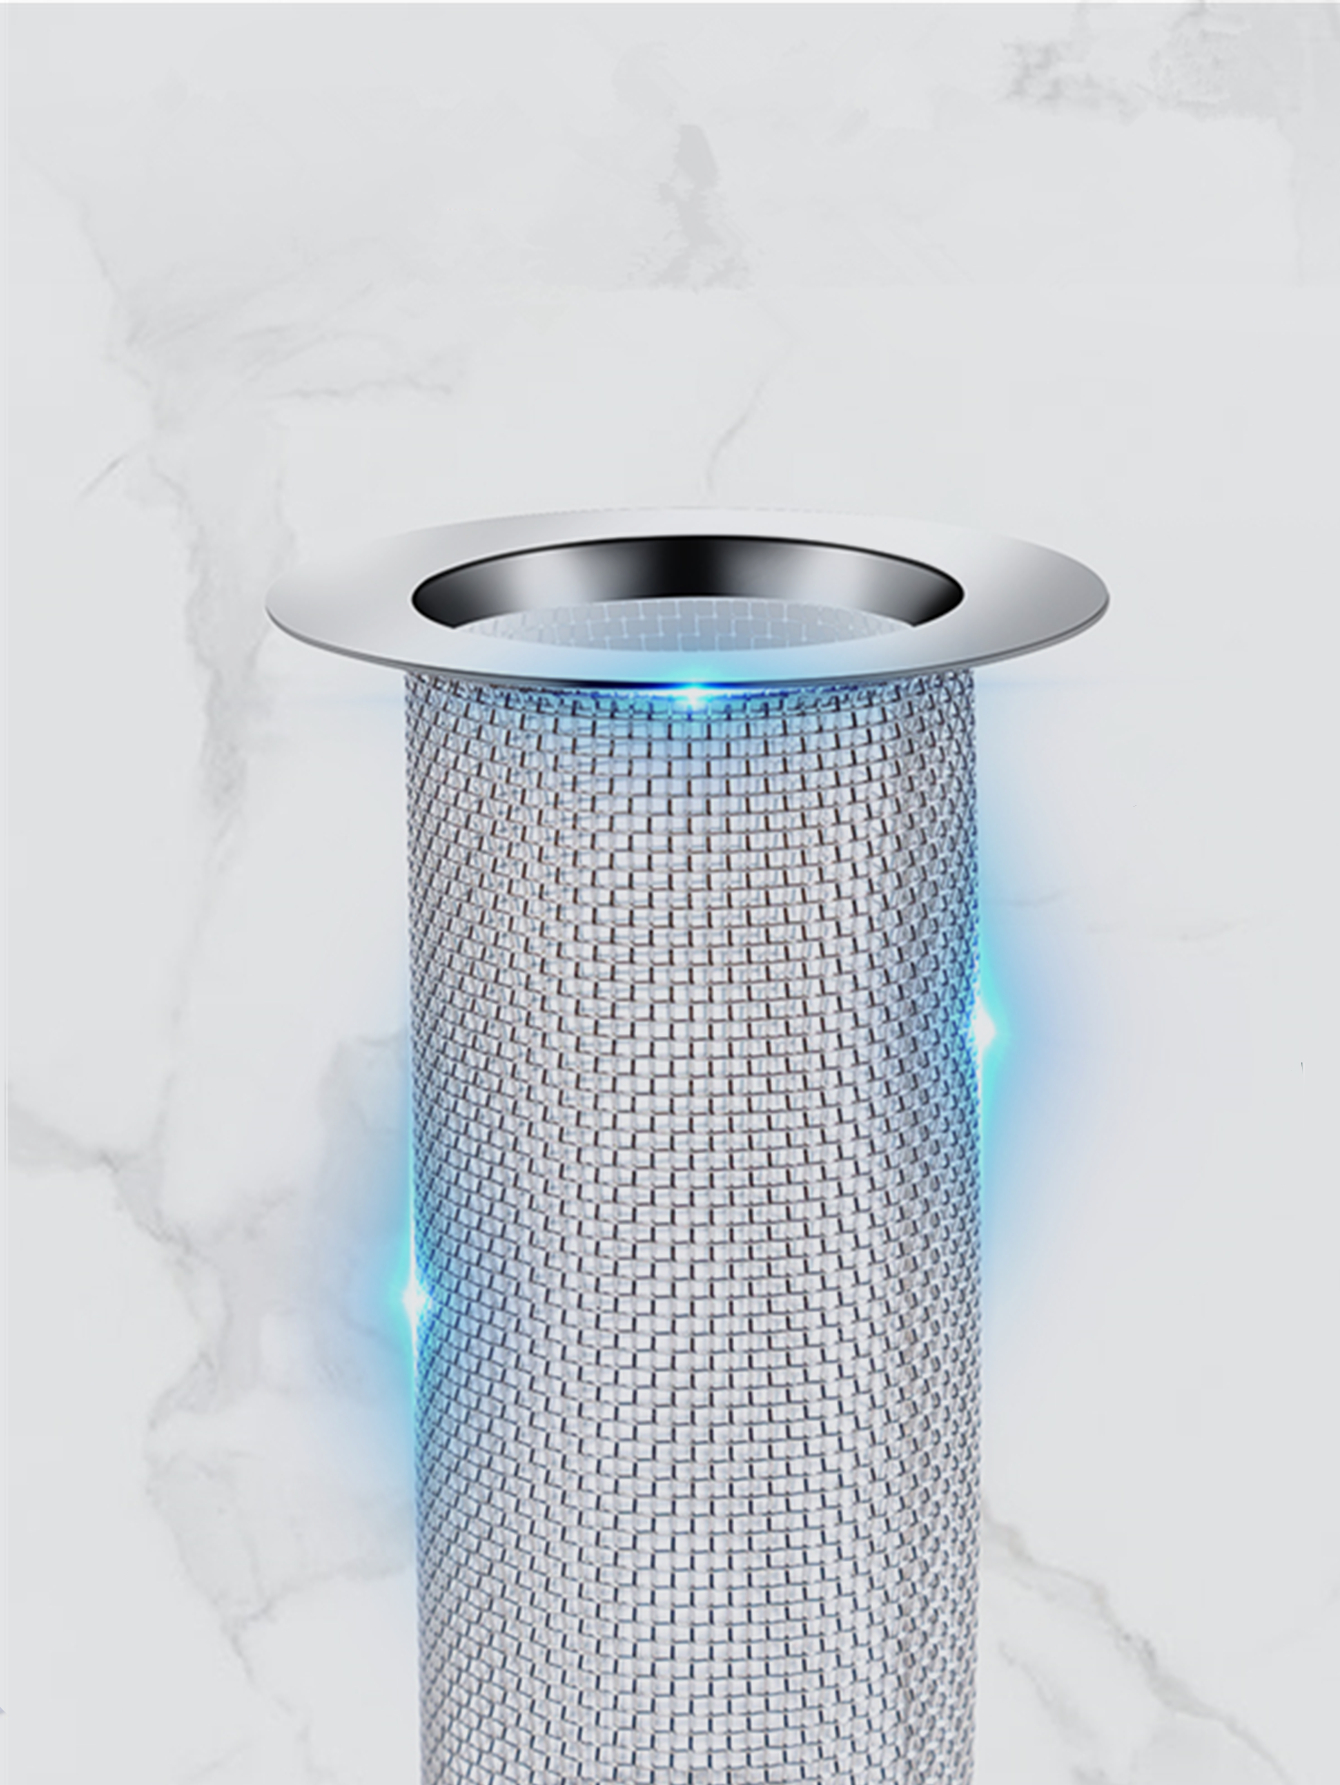 MroMax 2 filtros de malla para fregadero de 3.54 x 2.2 pulgadas (diámetro  exterior x diámetro interior), filtro de malla de metal para fregadero de